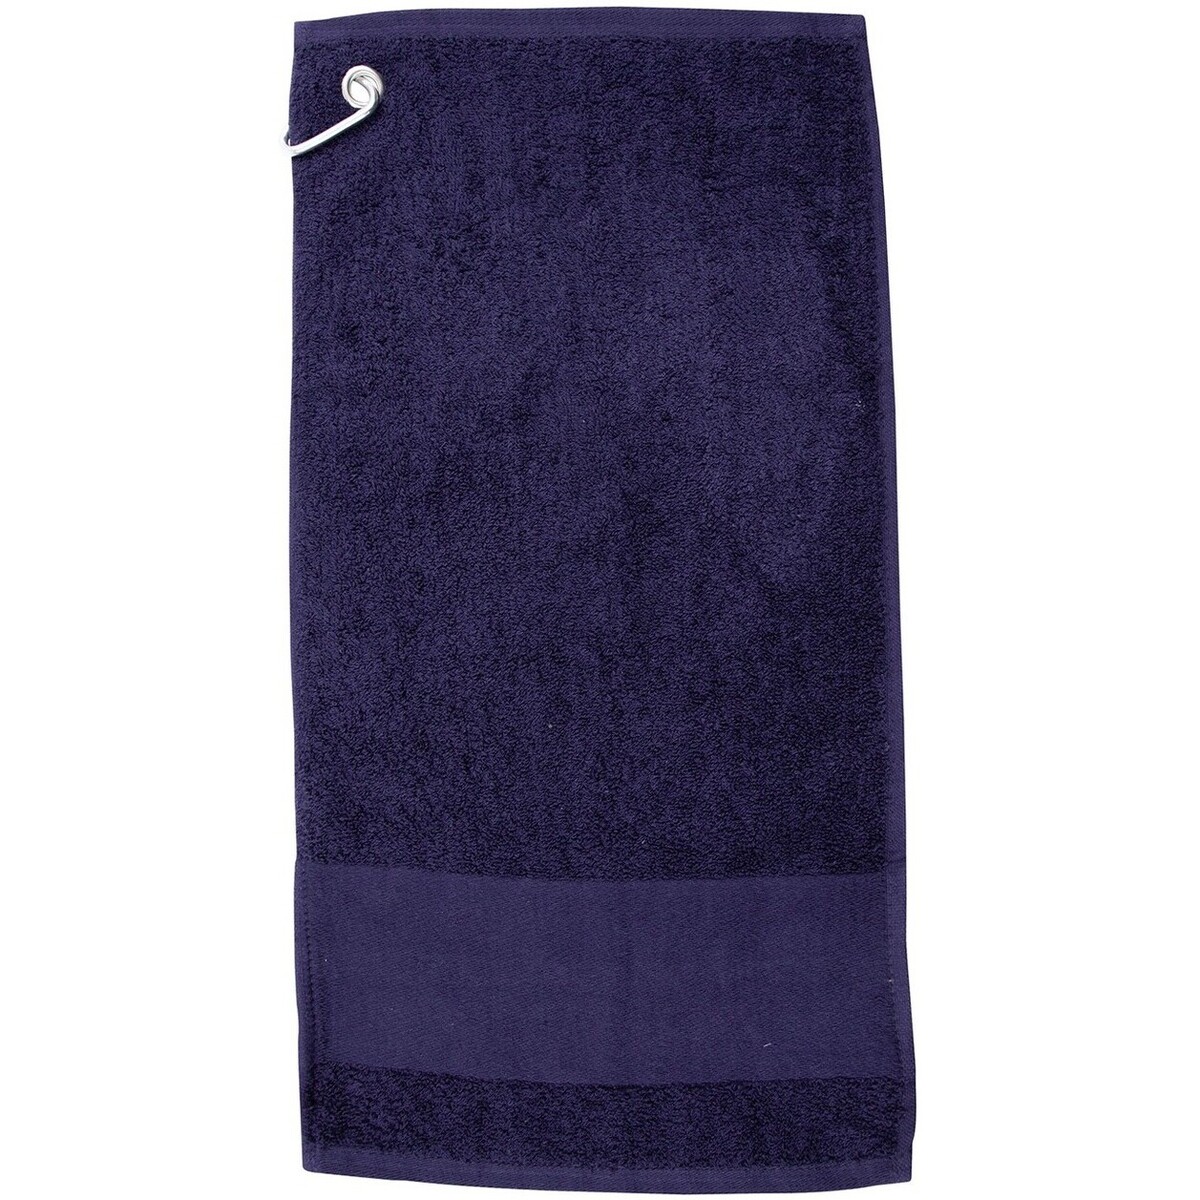 Référence produit JmksportShops Serviettes et gants de toilette Towel City RW9375 Bleu